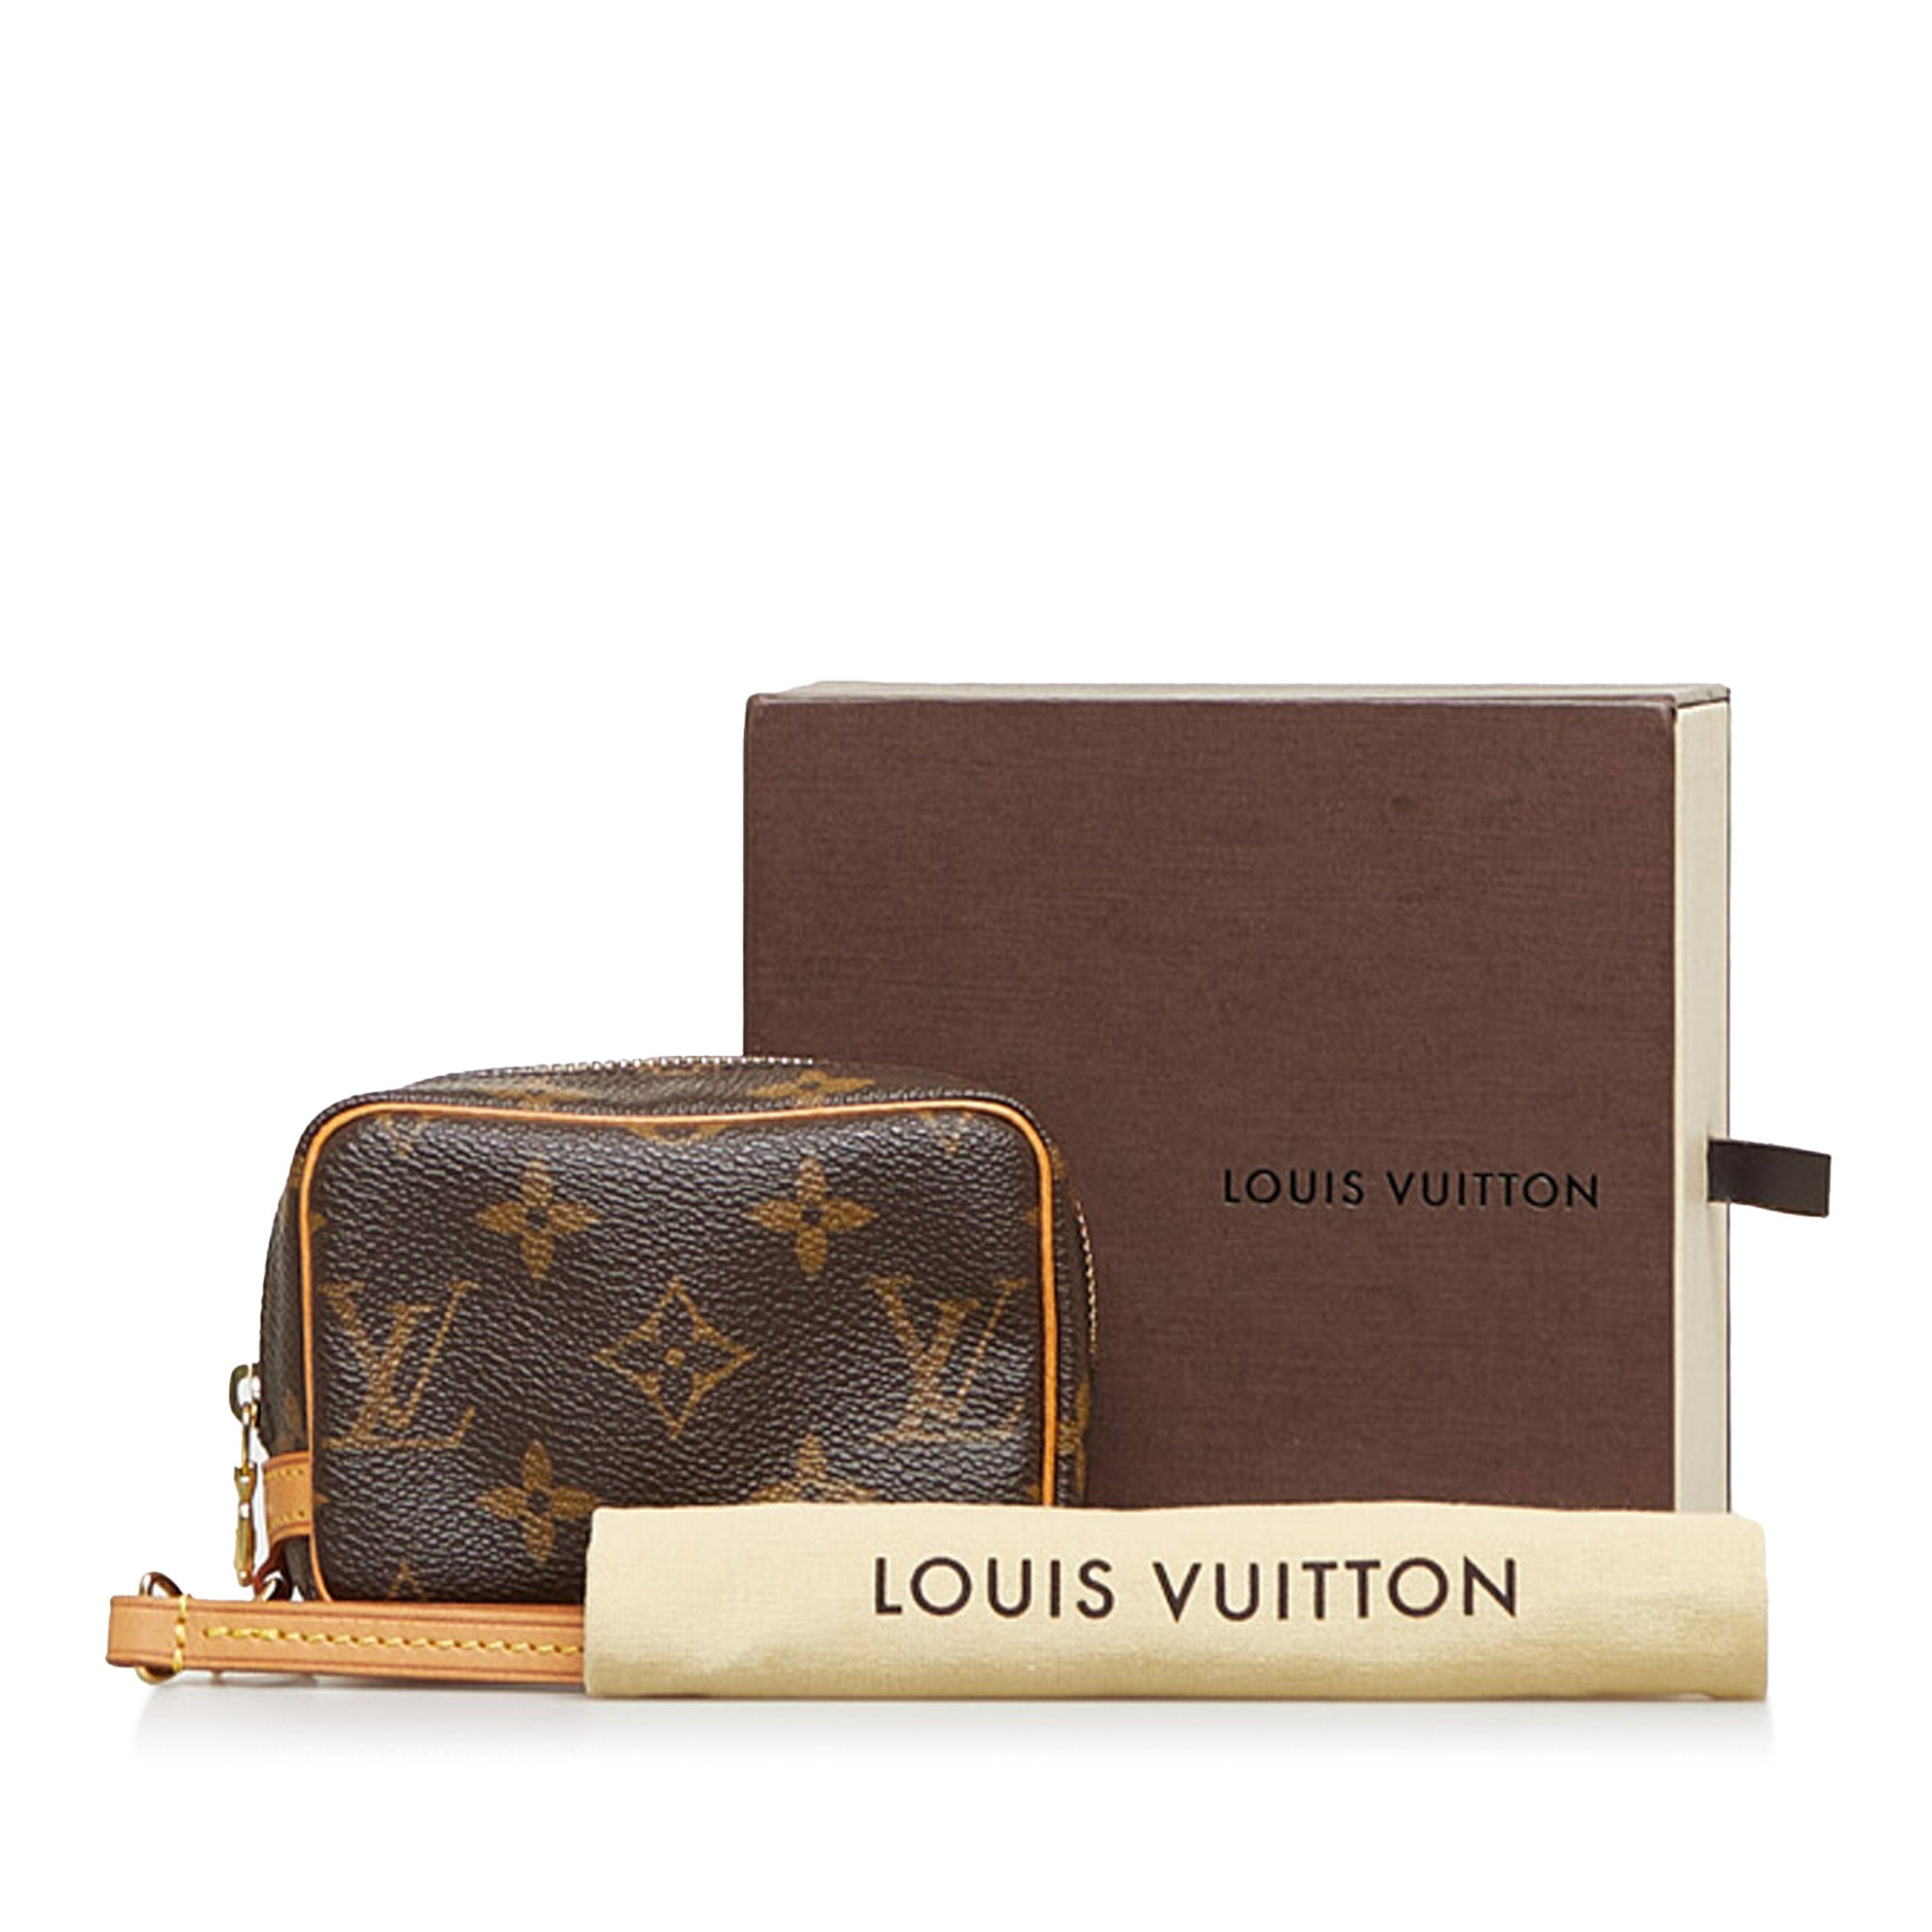 Louis Vuitton Trousse Wapity Pouch Monogram - THE PURSE AFFAIR